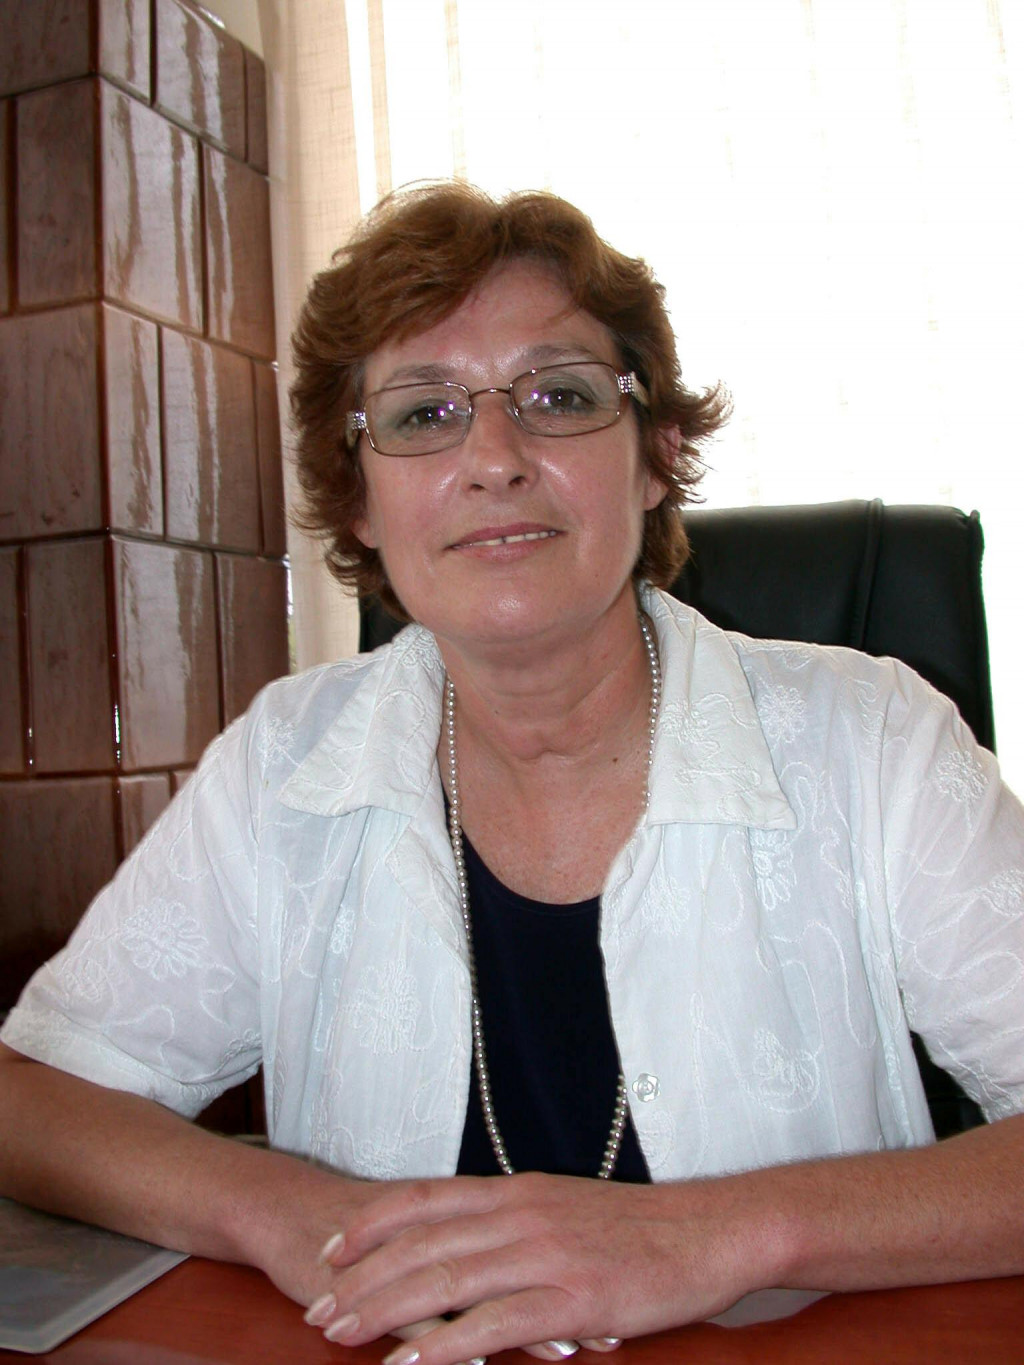 &lt;p&gt;Đirđica Plančić bila je prva gradonačelnica tog hvarskoga grada izabrana na prvim neposrednim izborima za tu funkciju 31. svibnja 2009. godine&lt;/p&gt;